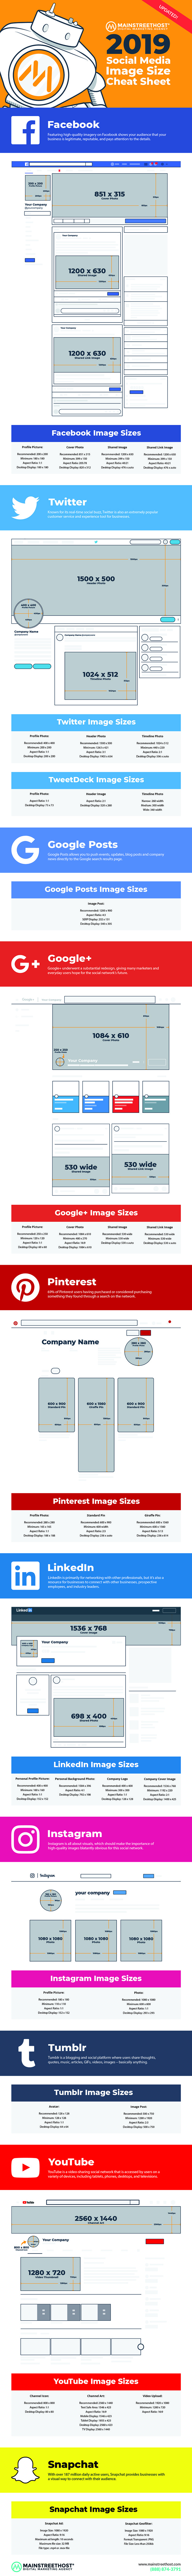 Размер изображения в социальных сетях Инфографика и все шаблоны изображений